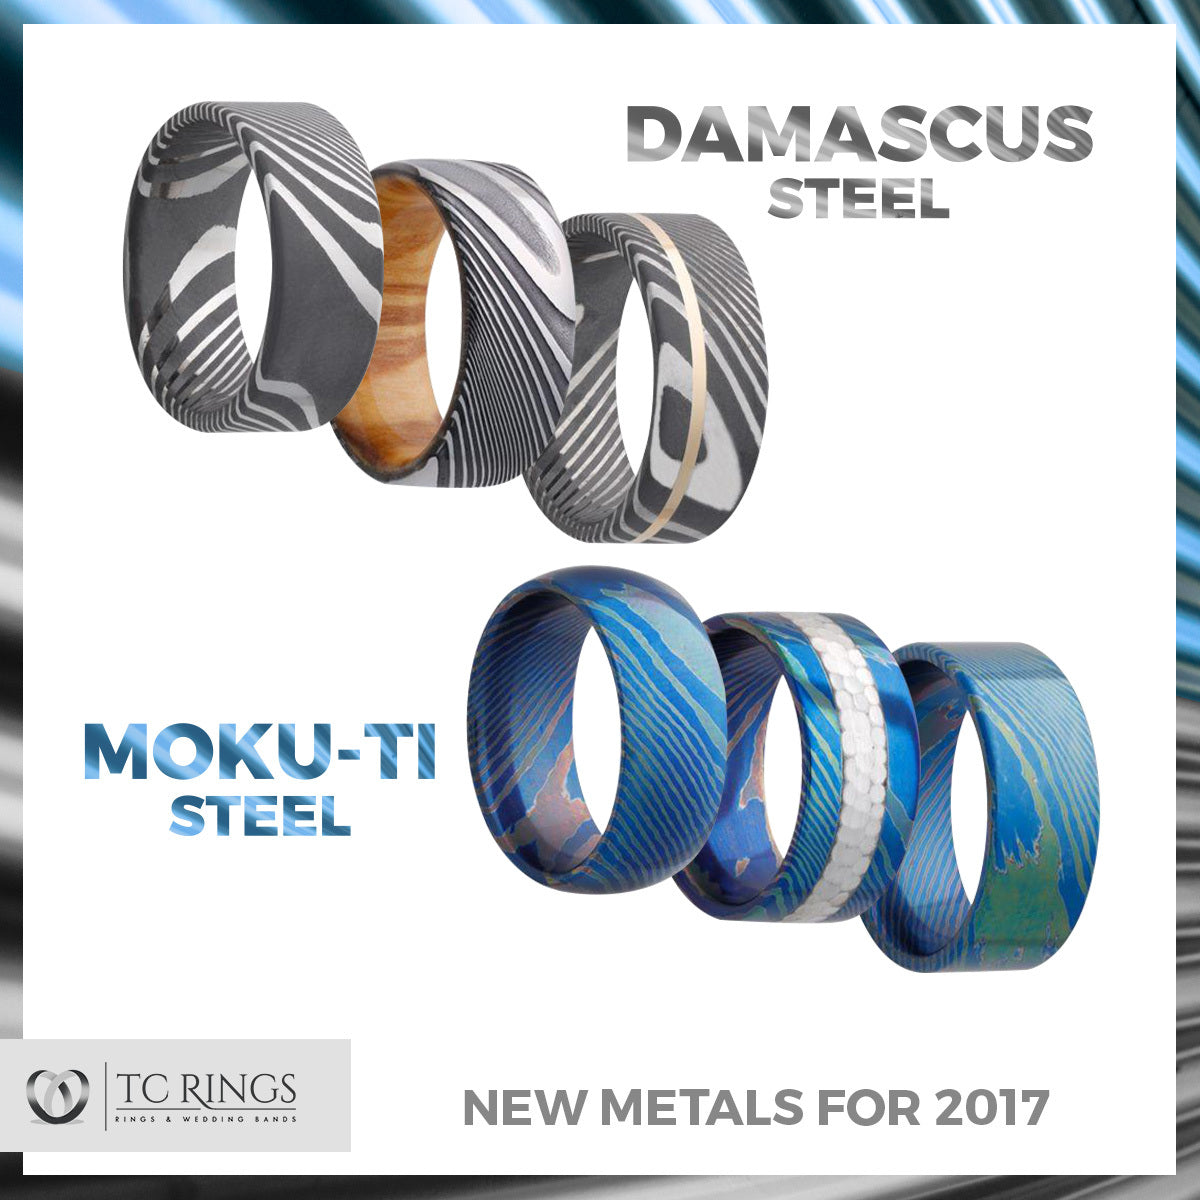 New Metals in 2017 — Moku-Ti & Damascus Steel